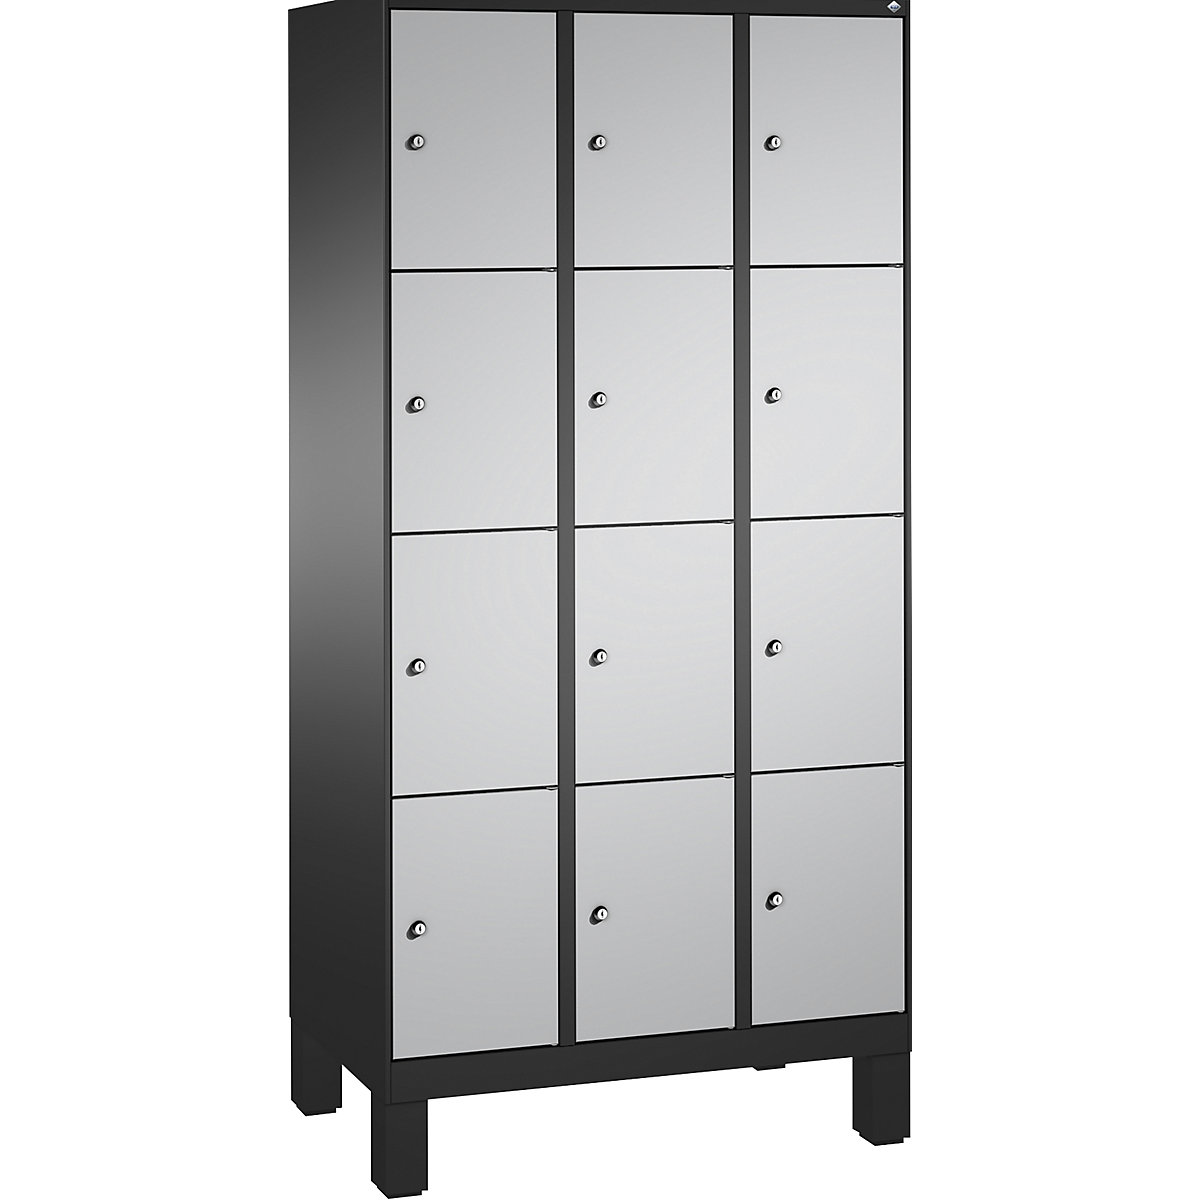 Armoire à casiers sur pieds EVOLO – C+P, 3 compartiments, 4 casiers chacun, largeur compartiments 300 mm, gris noir / aluminium-15